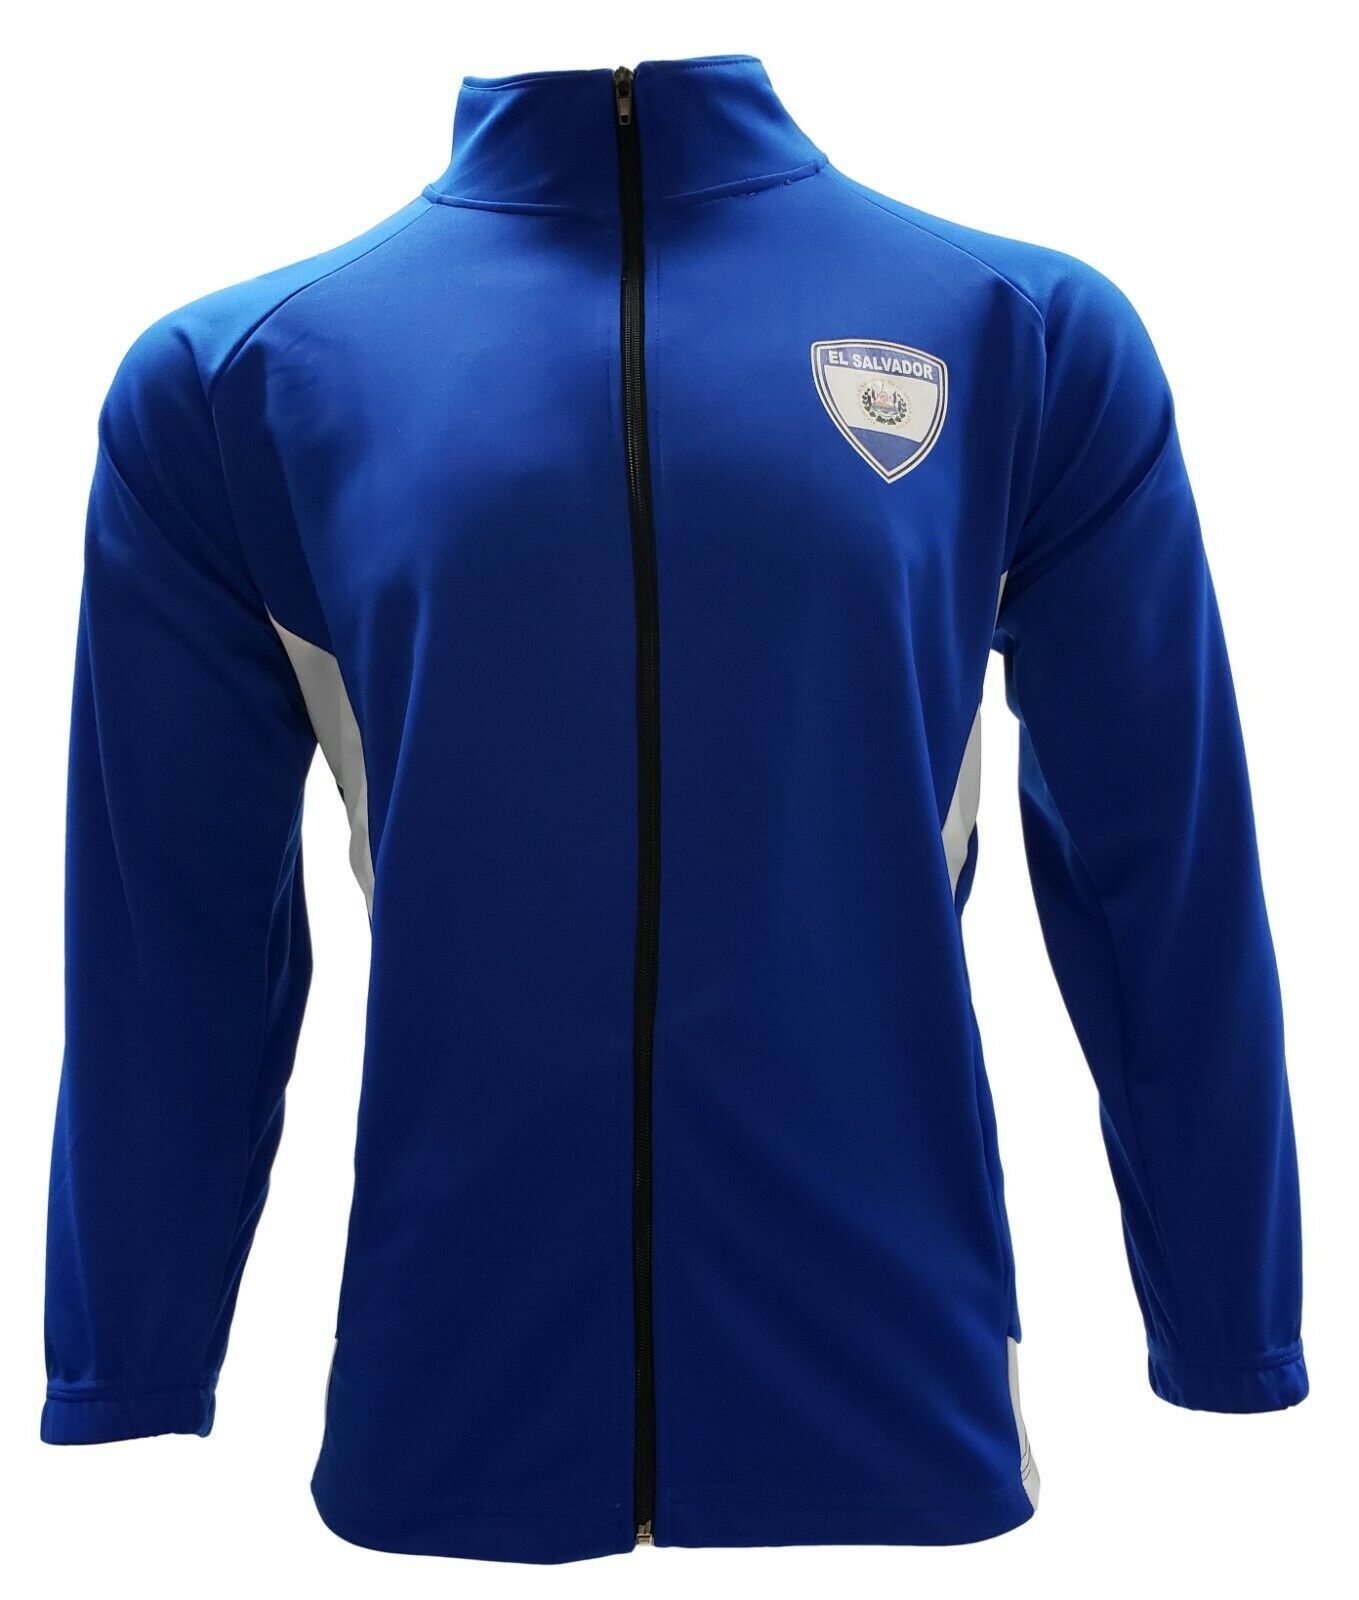 Men's Track Jacket El Salvador Color Blue/White - Activewear Jackets